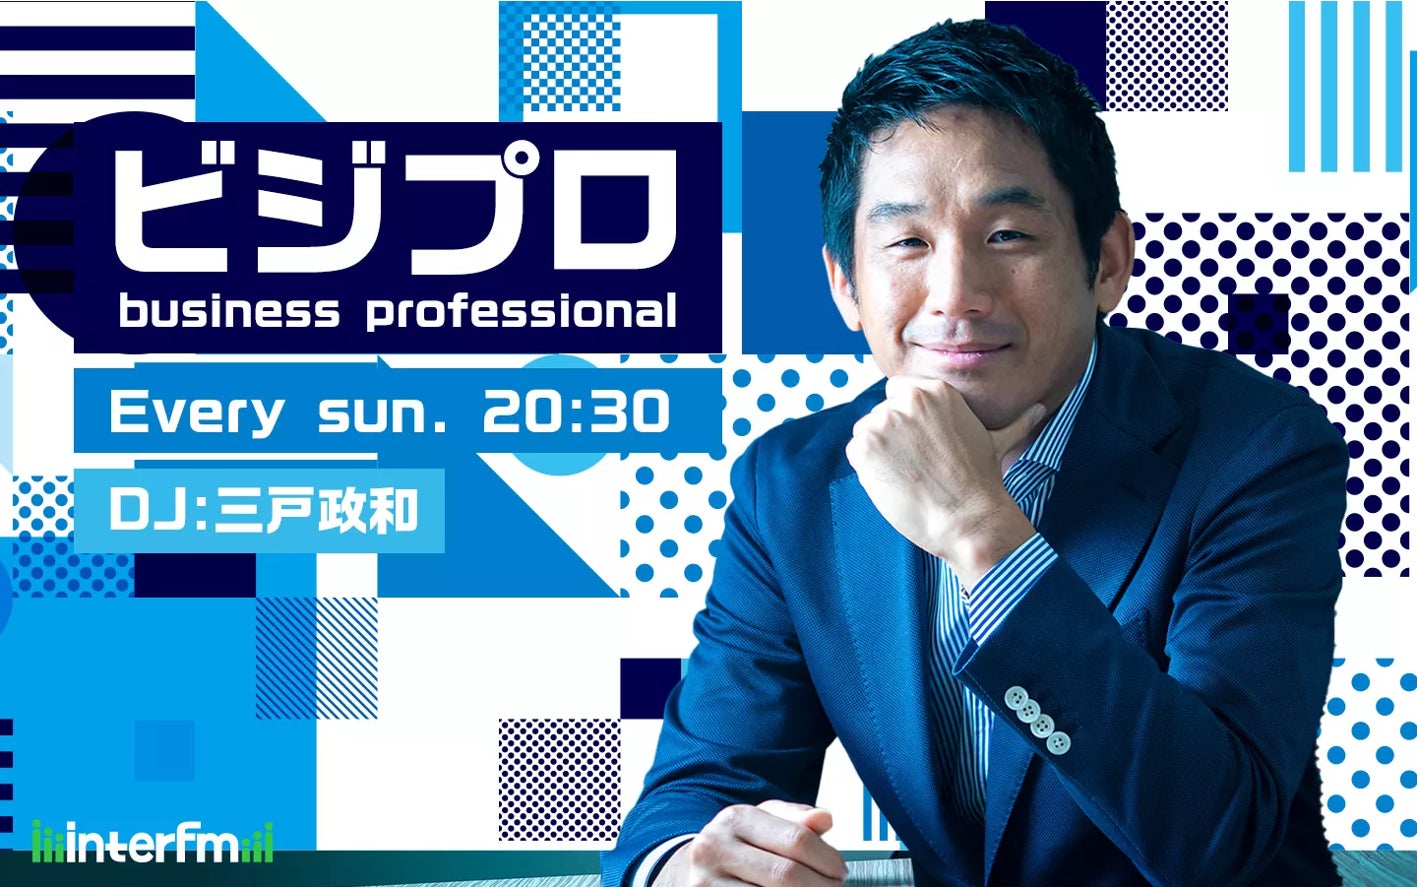 Craif CEOの小野瀨が、ラジオ番組「ビジプロ」に出演いたします